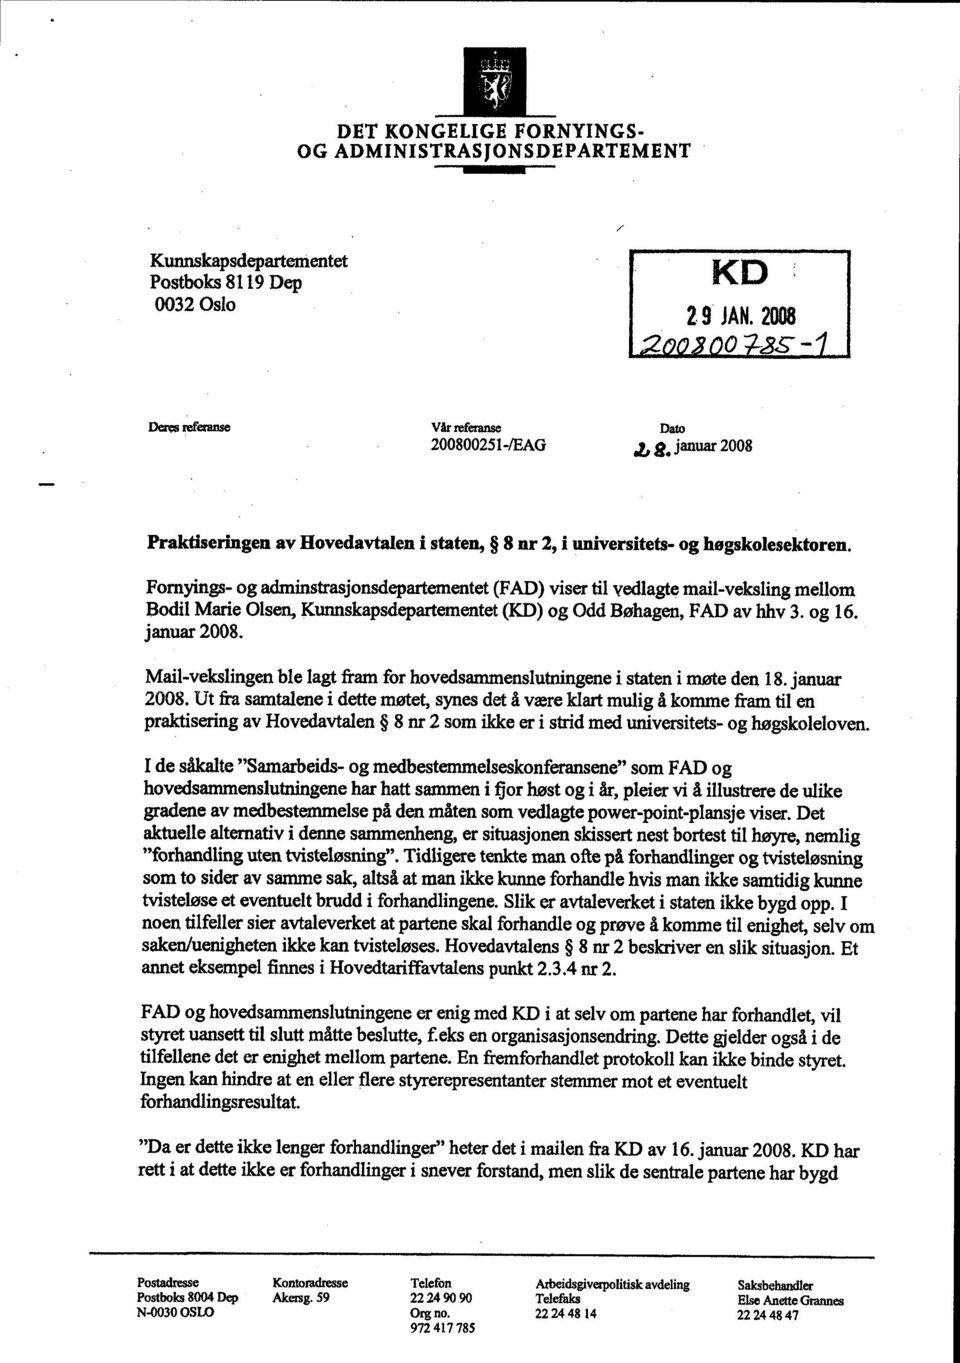 Fornyings- og adminstrasjonsdepartementet (FAD) viser til vedlagte mail-veksling mellom Bodil Marie Olsen, Kunnskapsdepartementet (KD) og Odd Bøhagen, FAD av hhv 3. og 16. januar 2008.